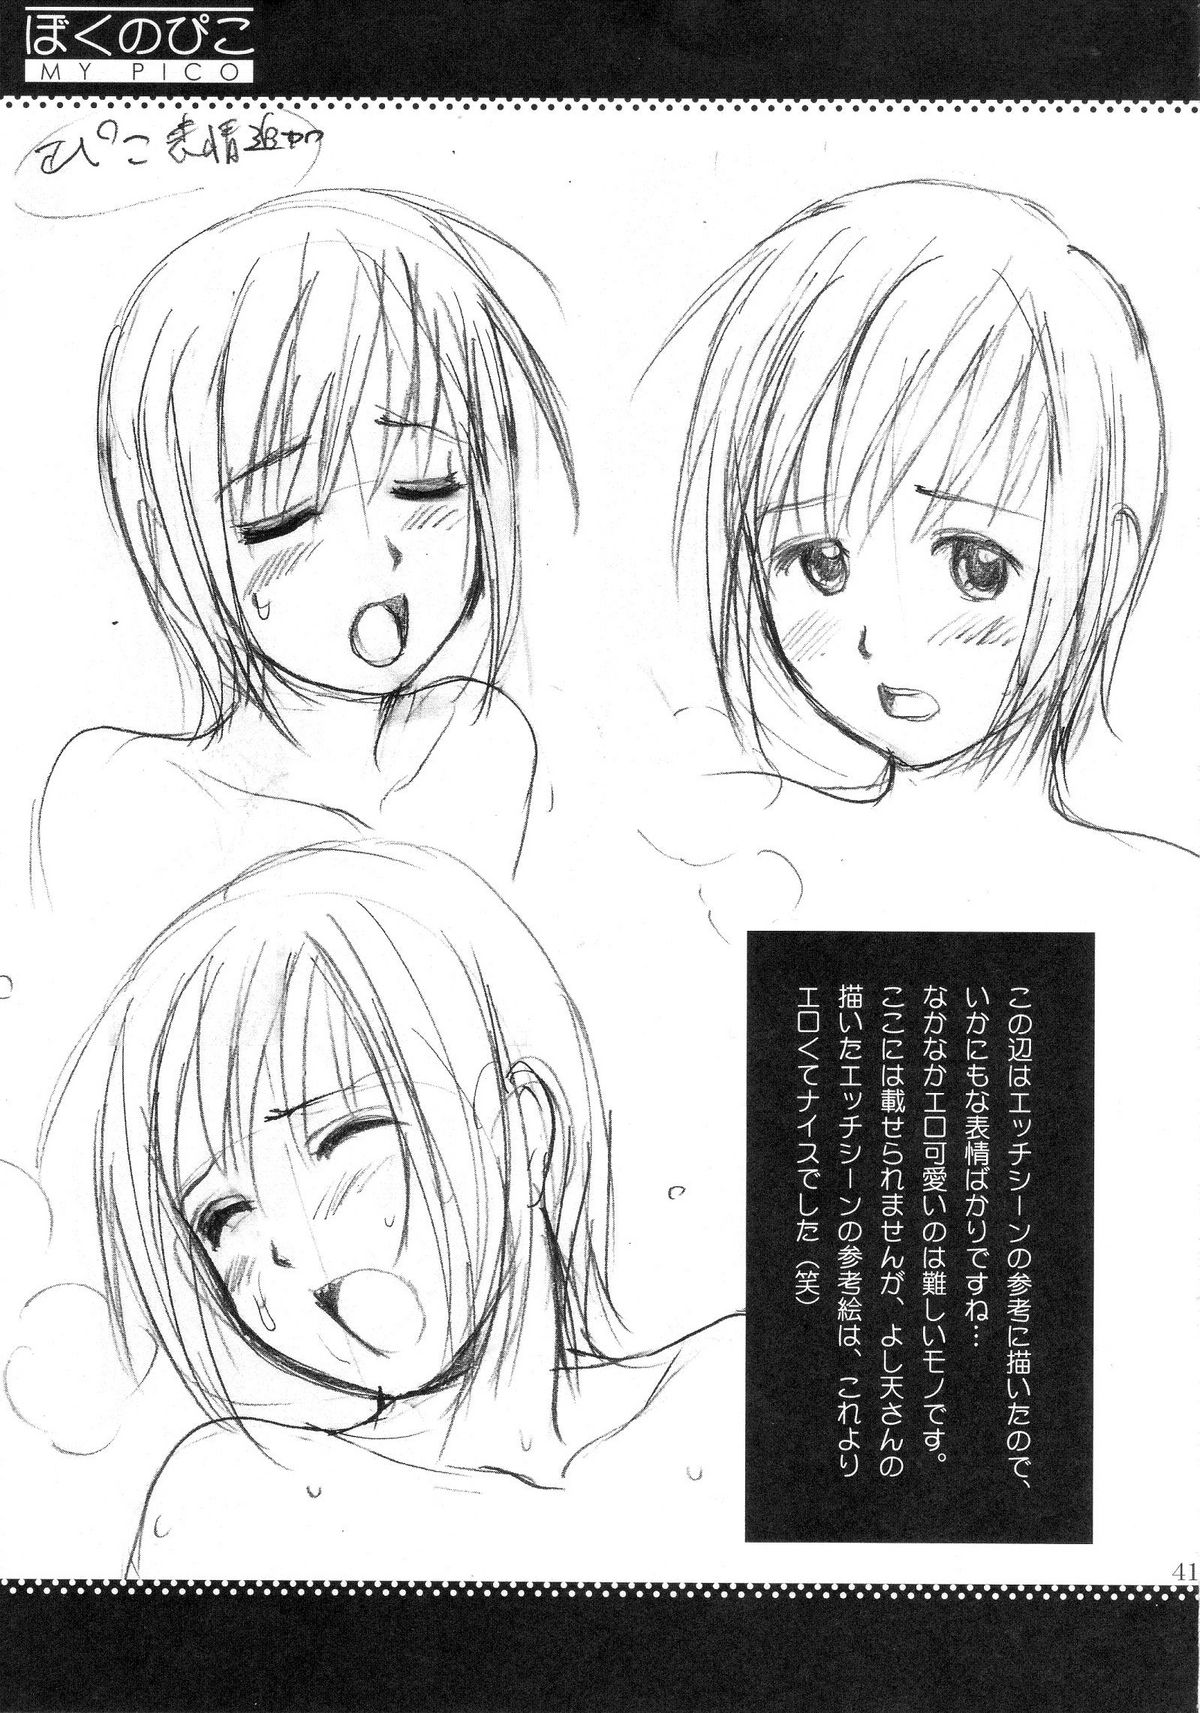 (COMIC1) [Saigado] Boku no Pico Comic + Koushiki Character Genanshuu (Boku no Pico) page 39 full